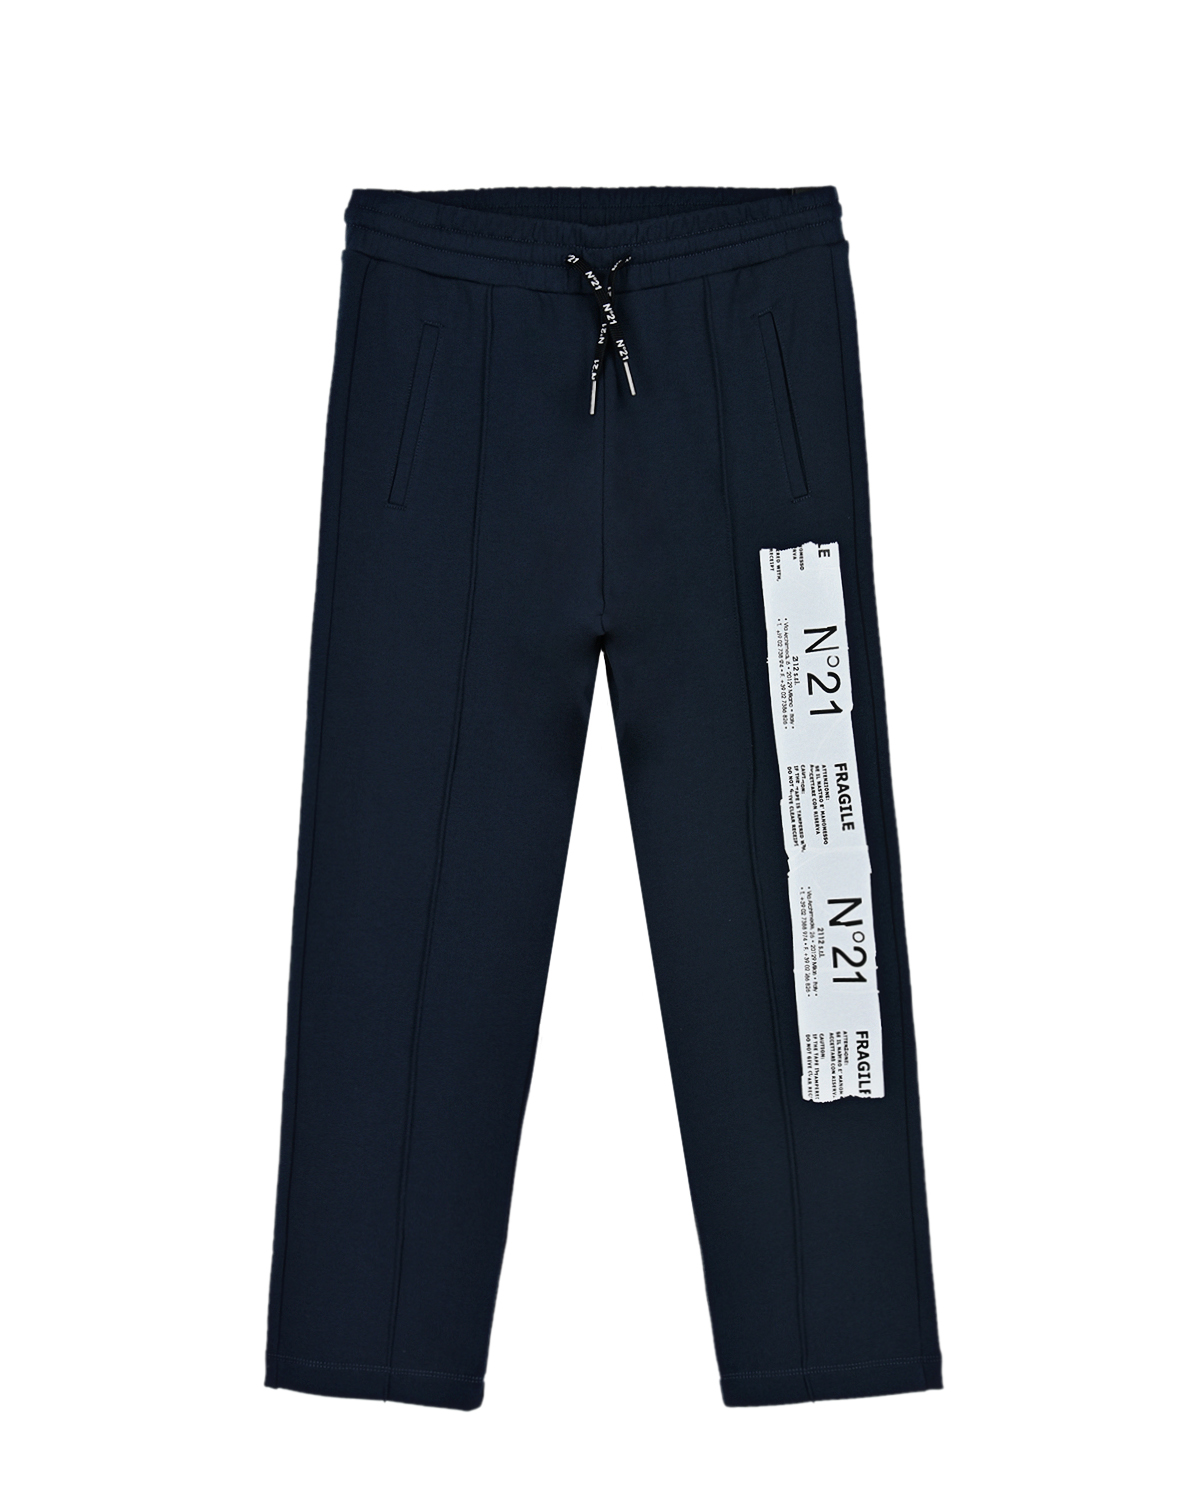 Спортивные брюки с принтом в виде этикетки "fragile" No. 21 детские, размер 152, цвет синий - фото 1